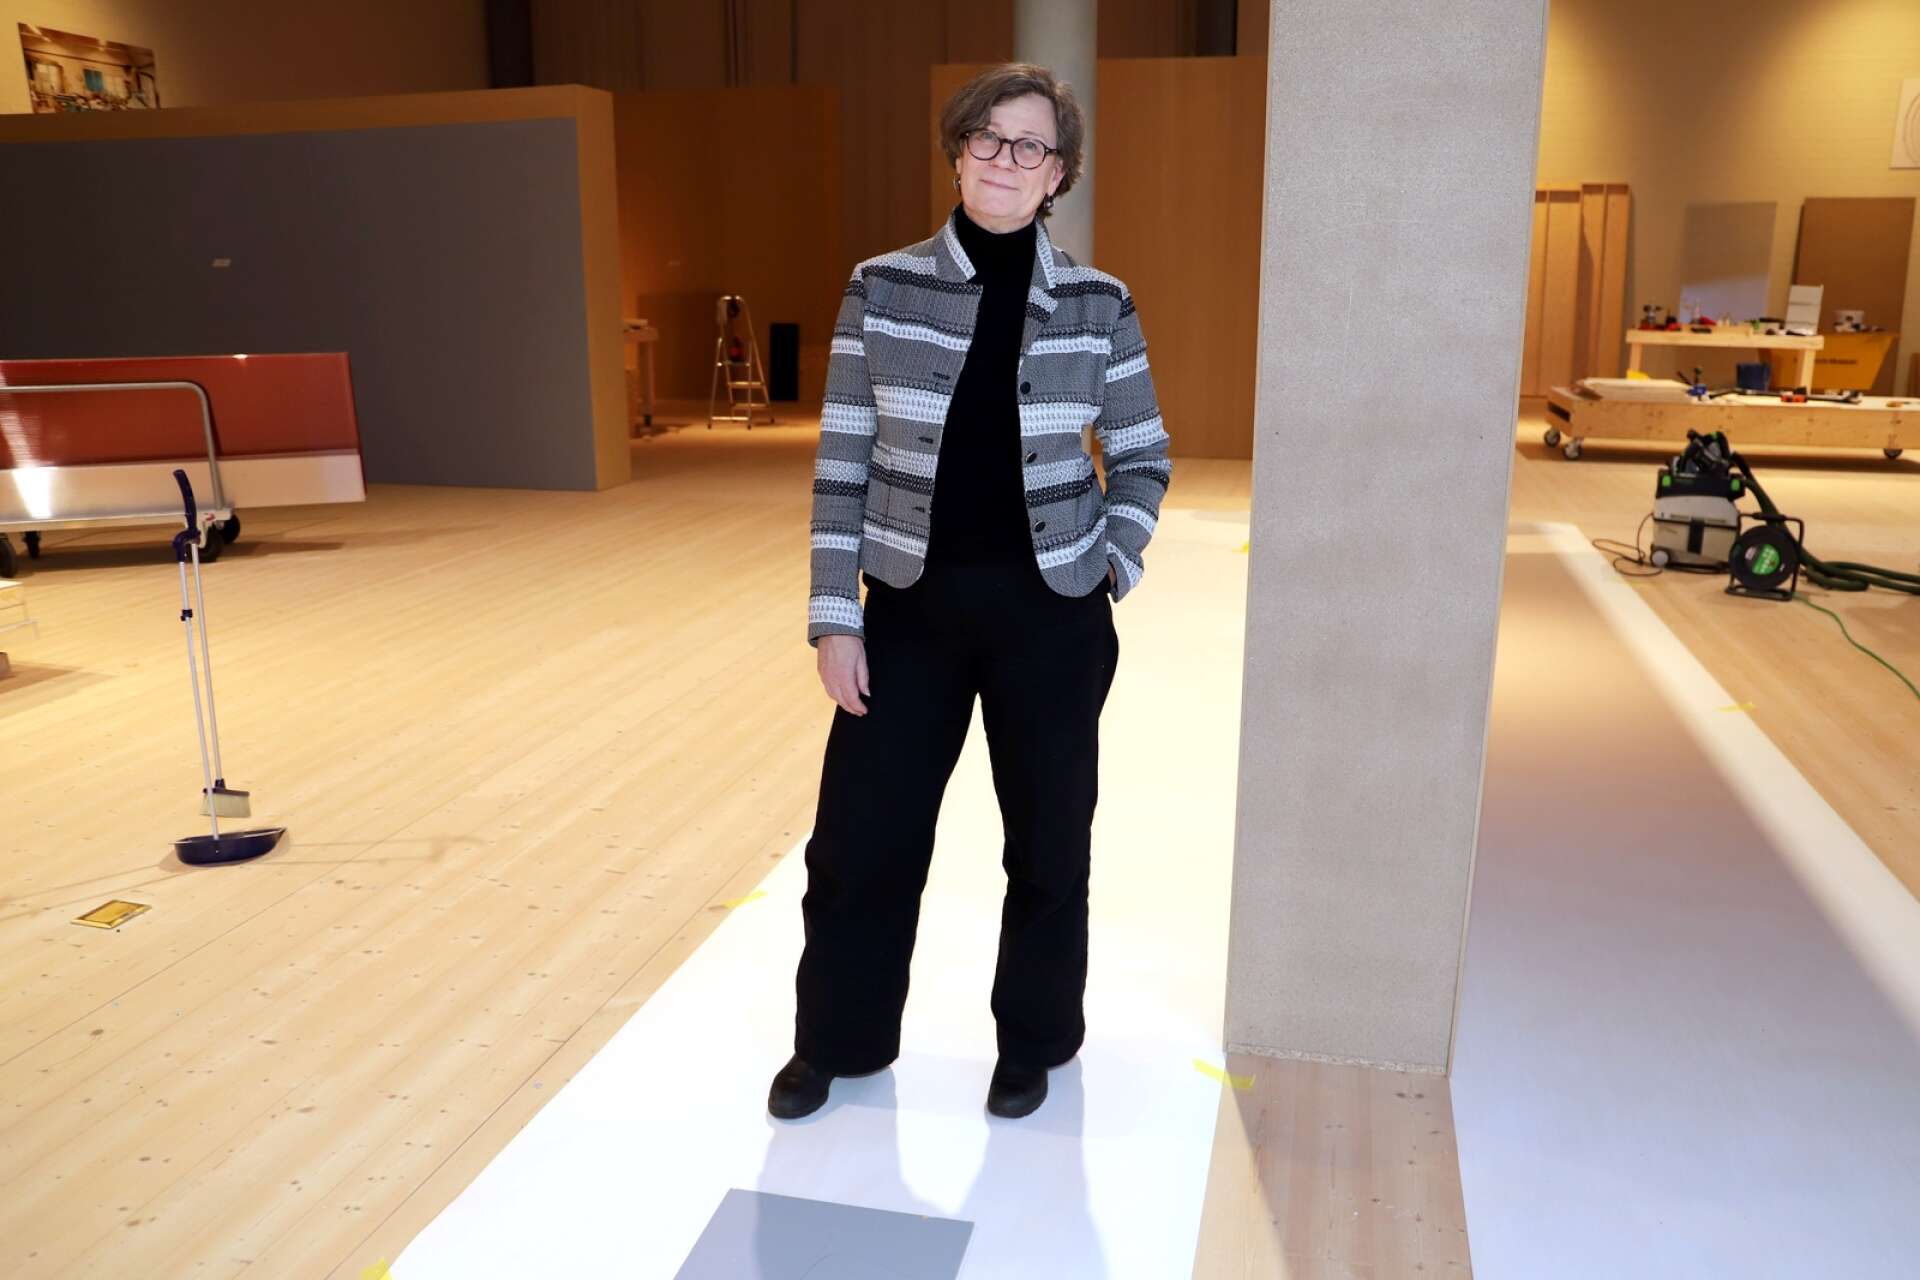 En ny utställning byggs upp på Värmlands museum. I februari kan Karin Åberg Waern, utställningschef på Värmlands museum, hälsa välkommen till en stor utställning om modernisten Axel Törneman.